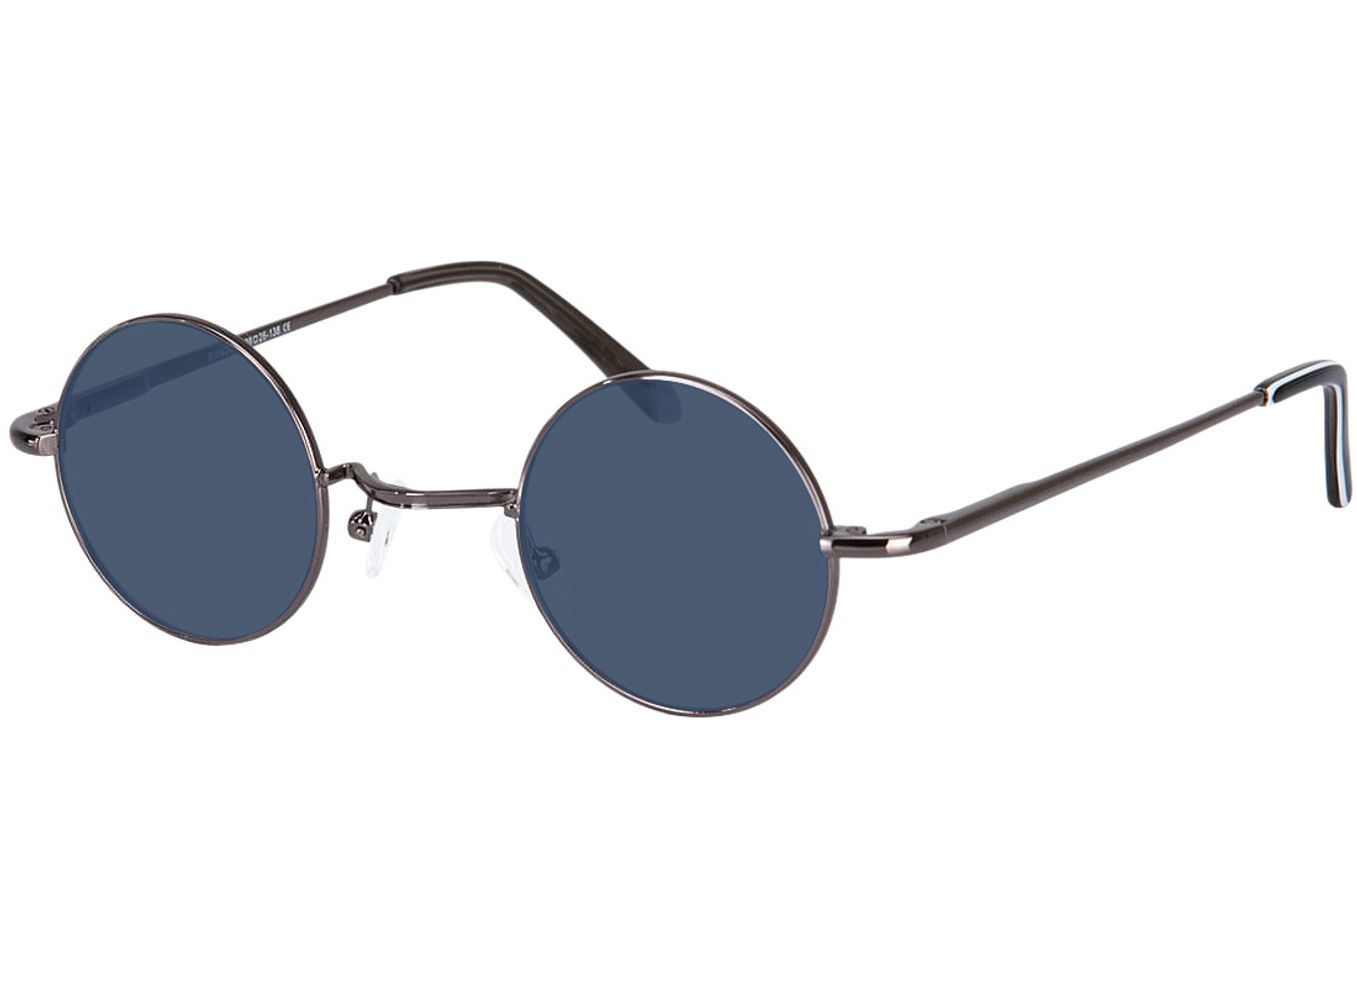 Cary - anthrazit Sonnenbrille ohne Sehstärke, Vollrand, Rund von Brille24 Collection